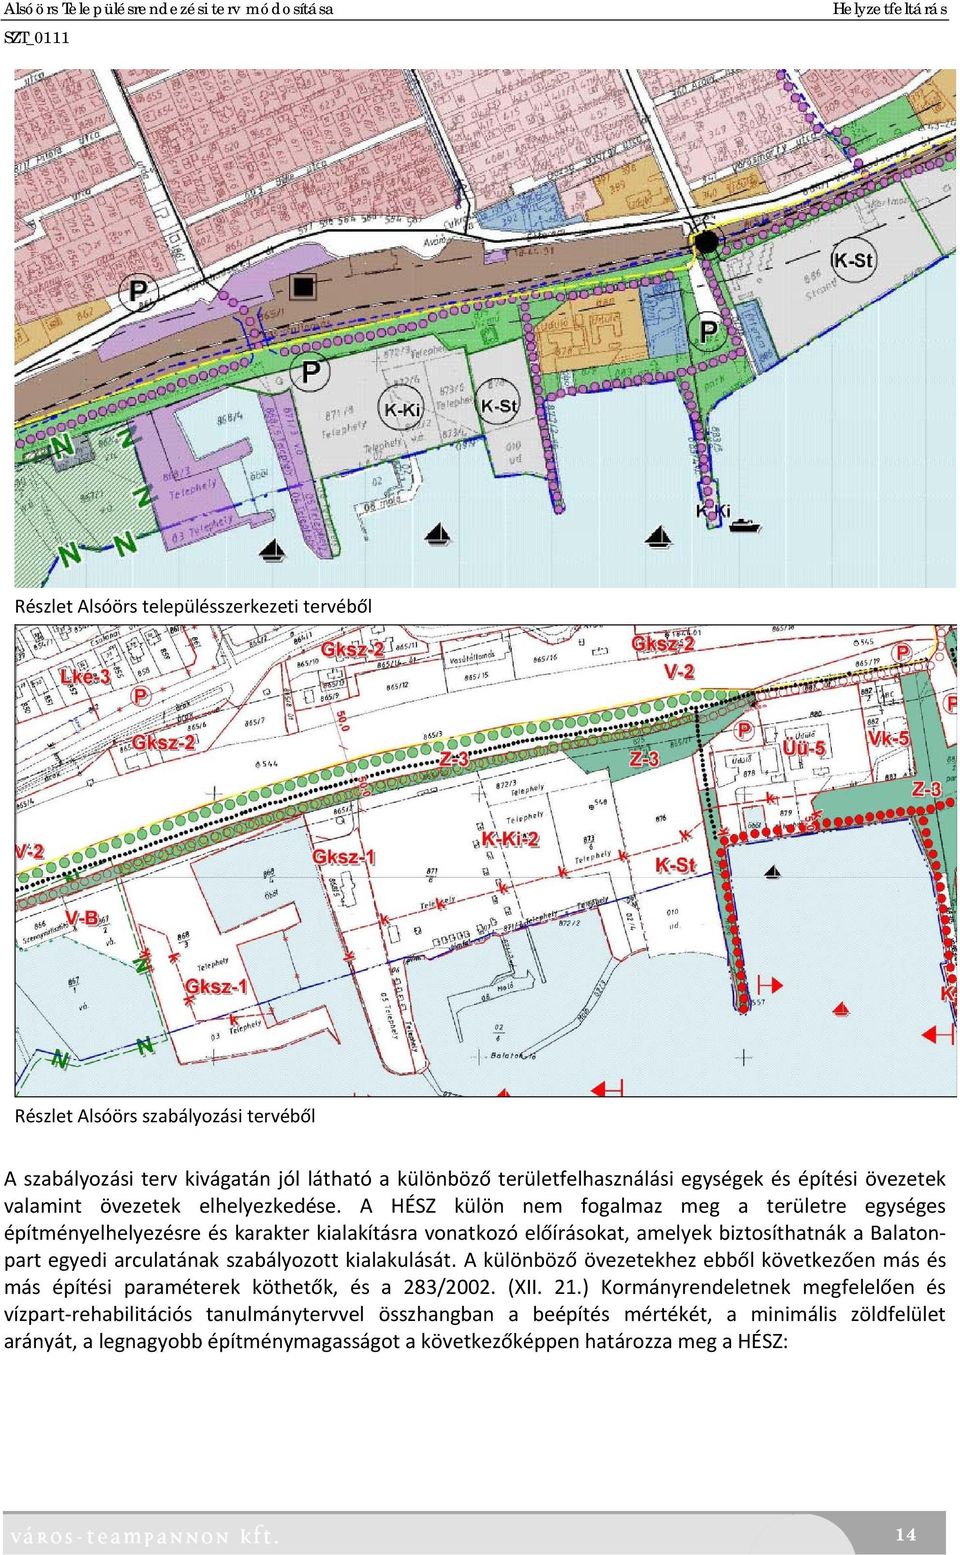 A HÉSZ külön nem fogalmaz meg a területre egységes építményelhelyezésre és karakter kialakításra vonatkozó előírásokat, amelyek biztosíthatnák a Balatonpart egyedi arculatának szabályozott